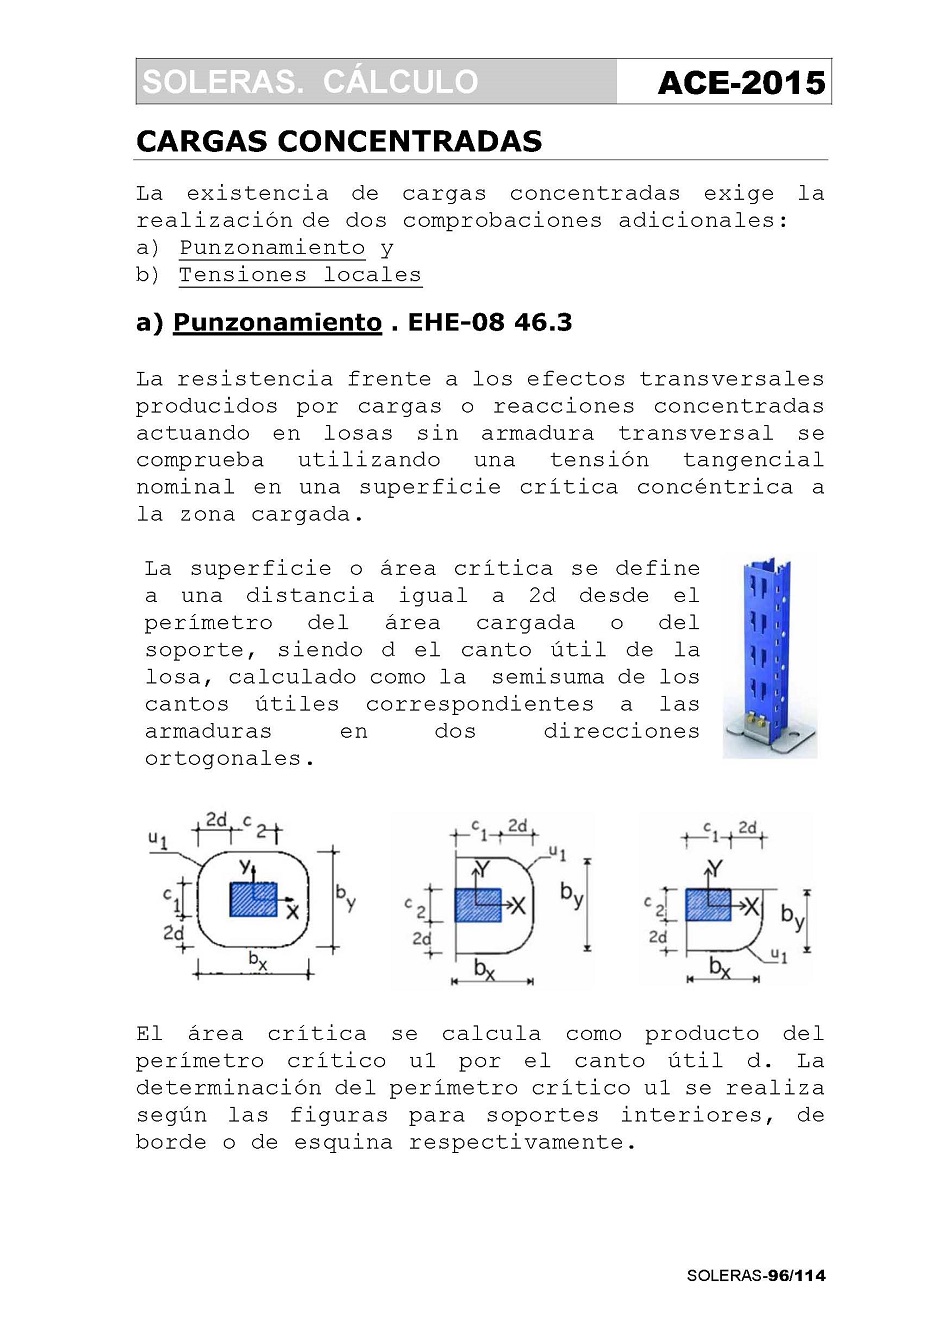 Cálculo de Soleras de Hormigón. Página 96